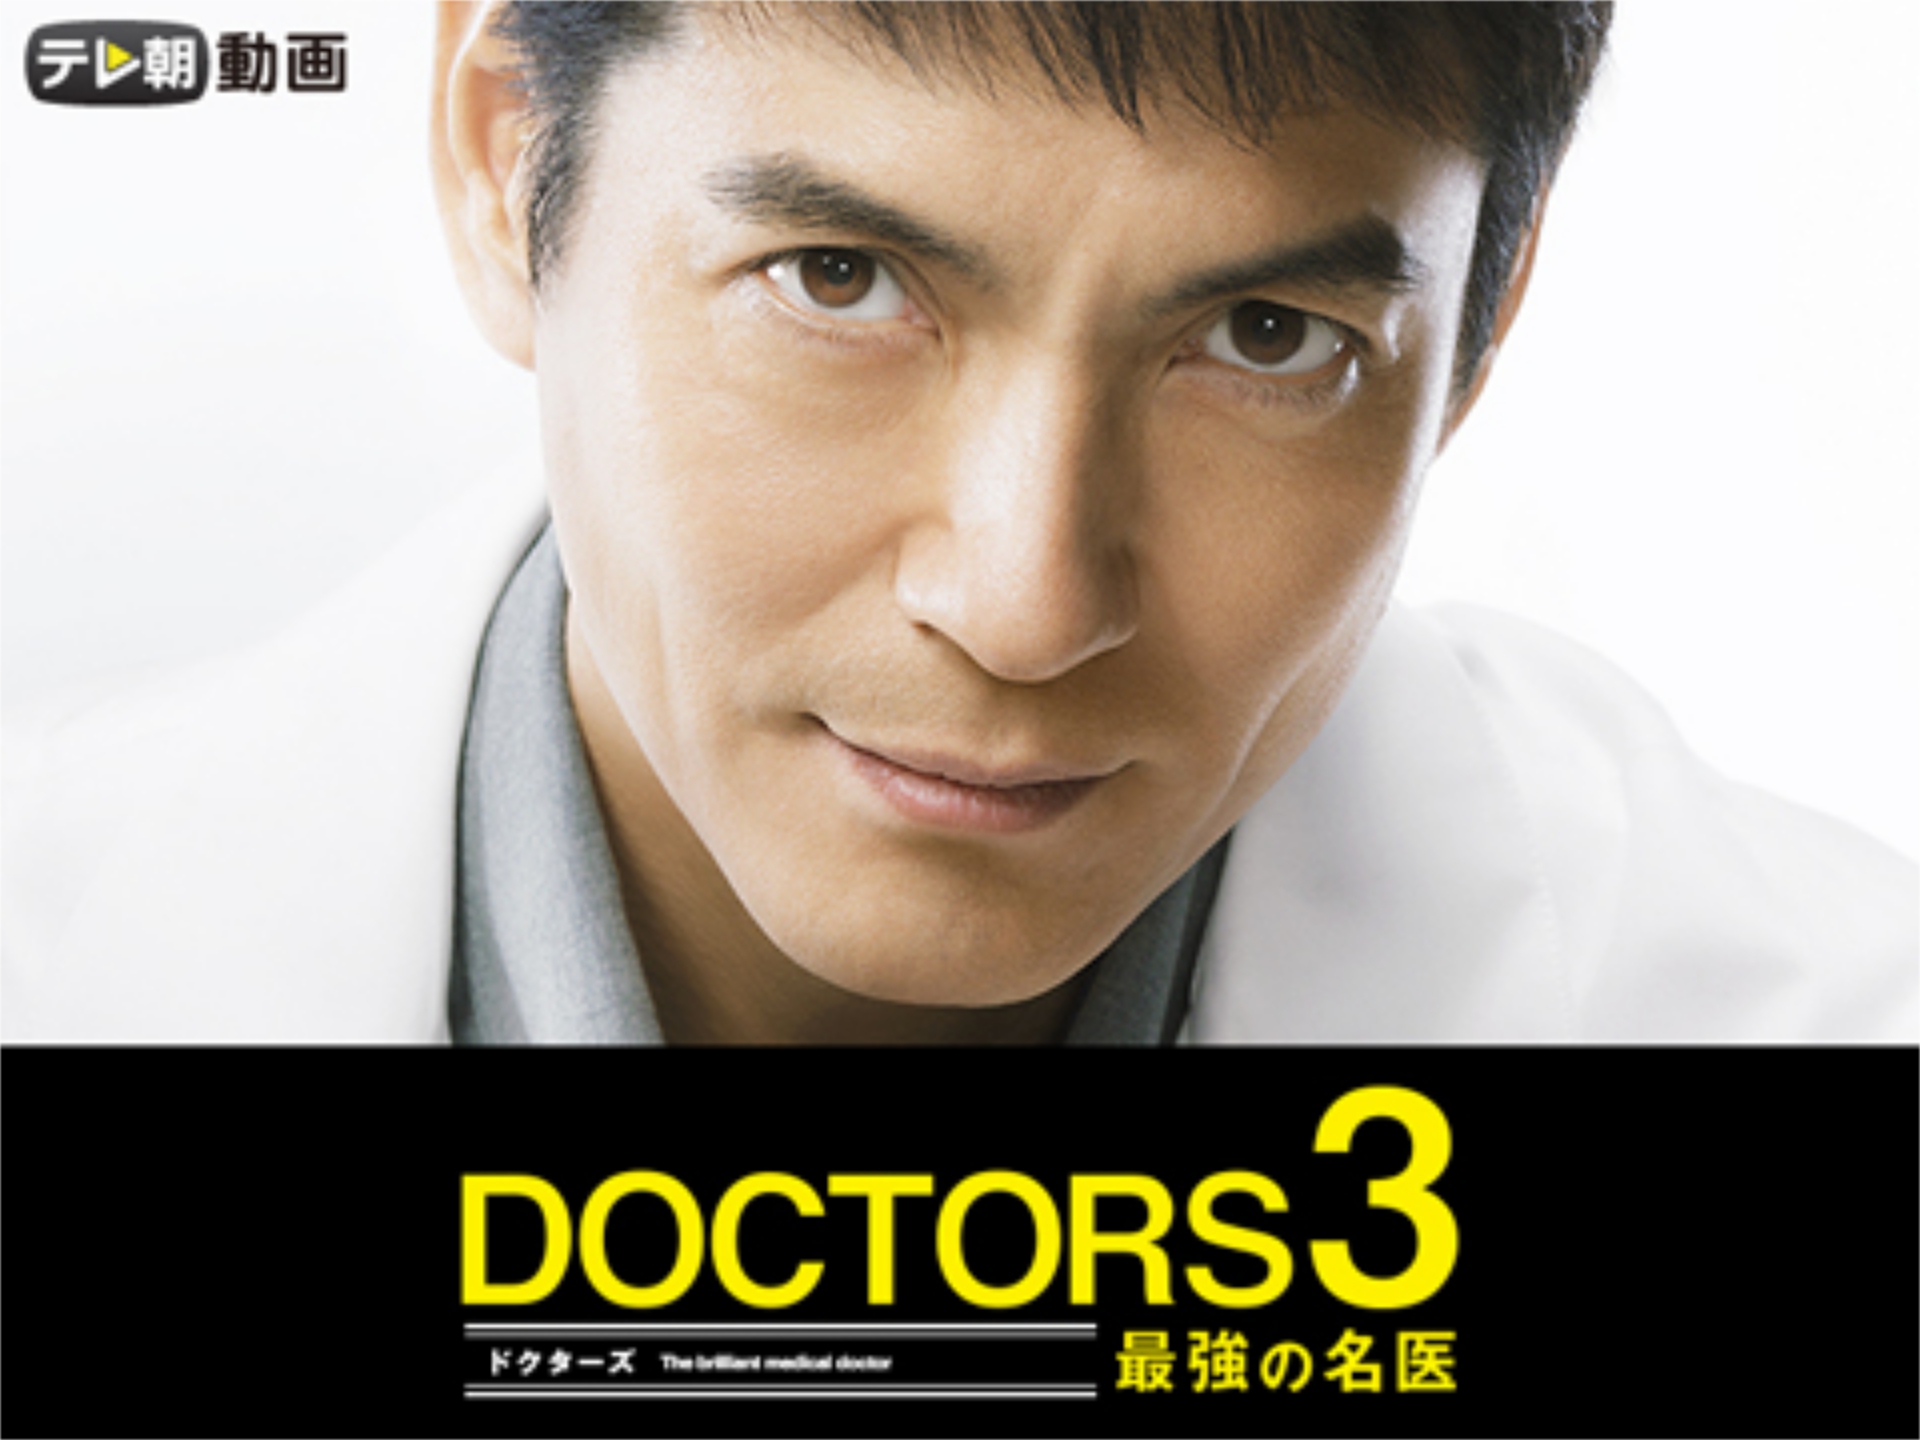 ドラマ Doctors 3 最強の名医 の動画まとめ 初月無料 動画配信サービスのビデオマーケット